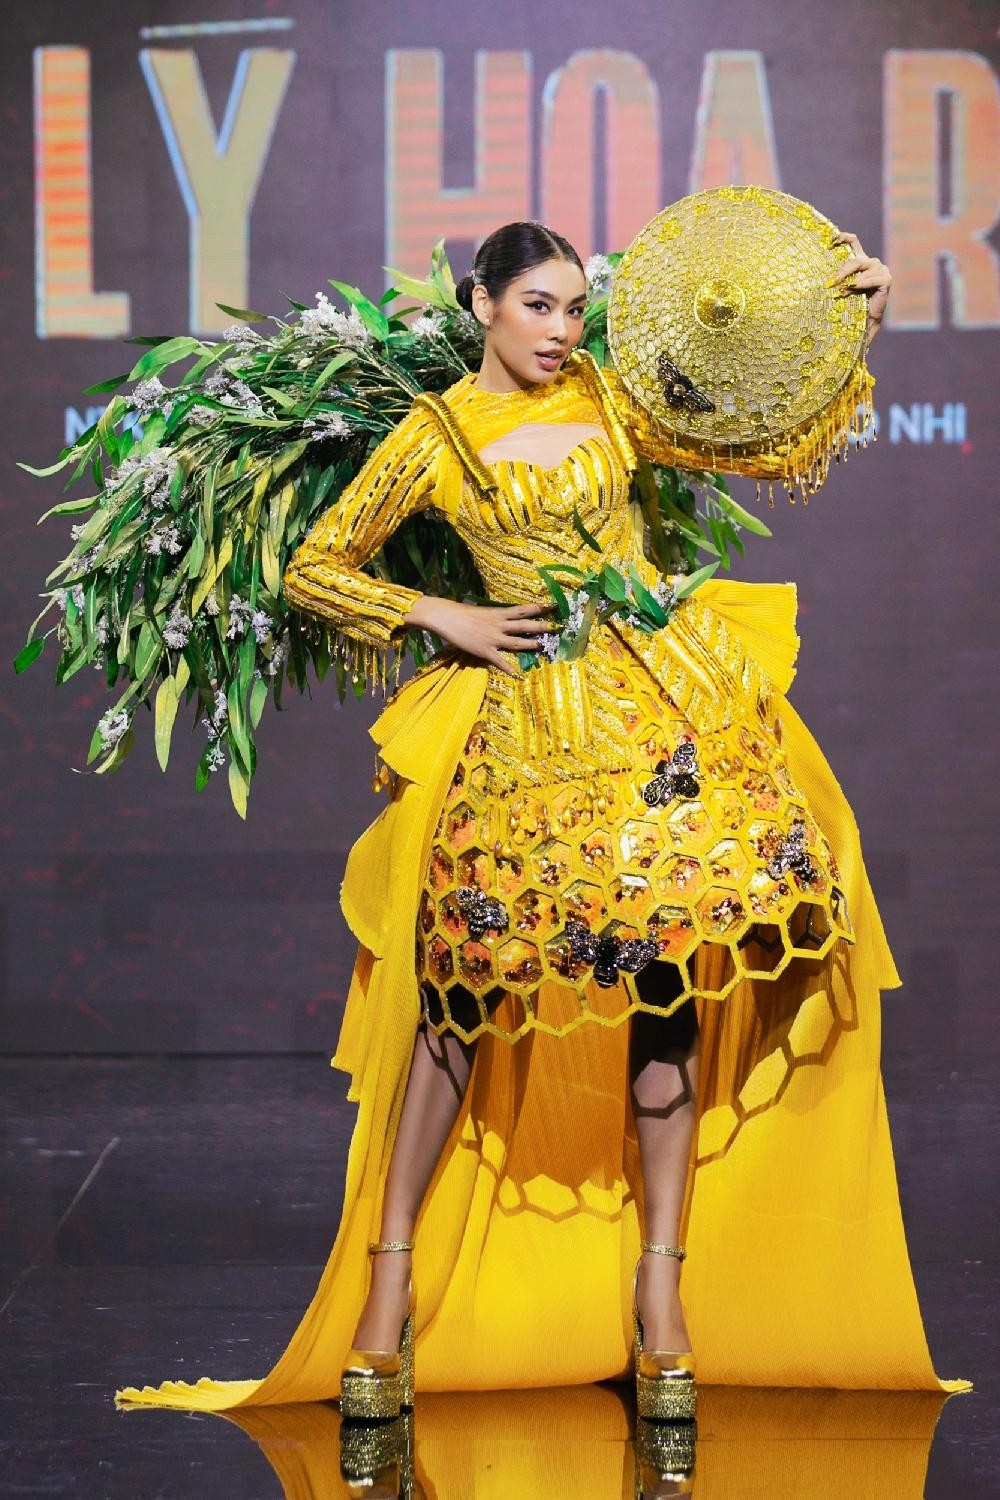 Thiết kế nào được chọn làm Trang phục Dân tộc cho tân Hoa hậu Hoàn vũ Việt Nam? ảnh 15